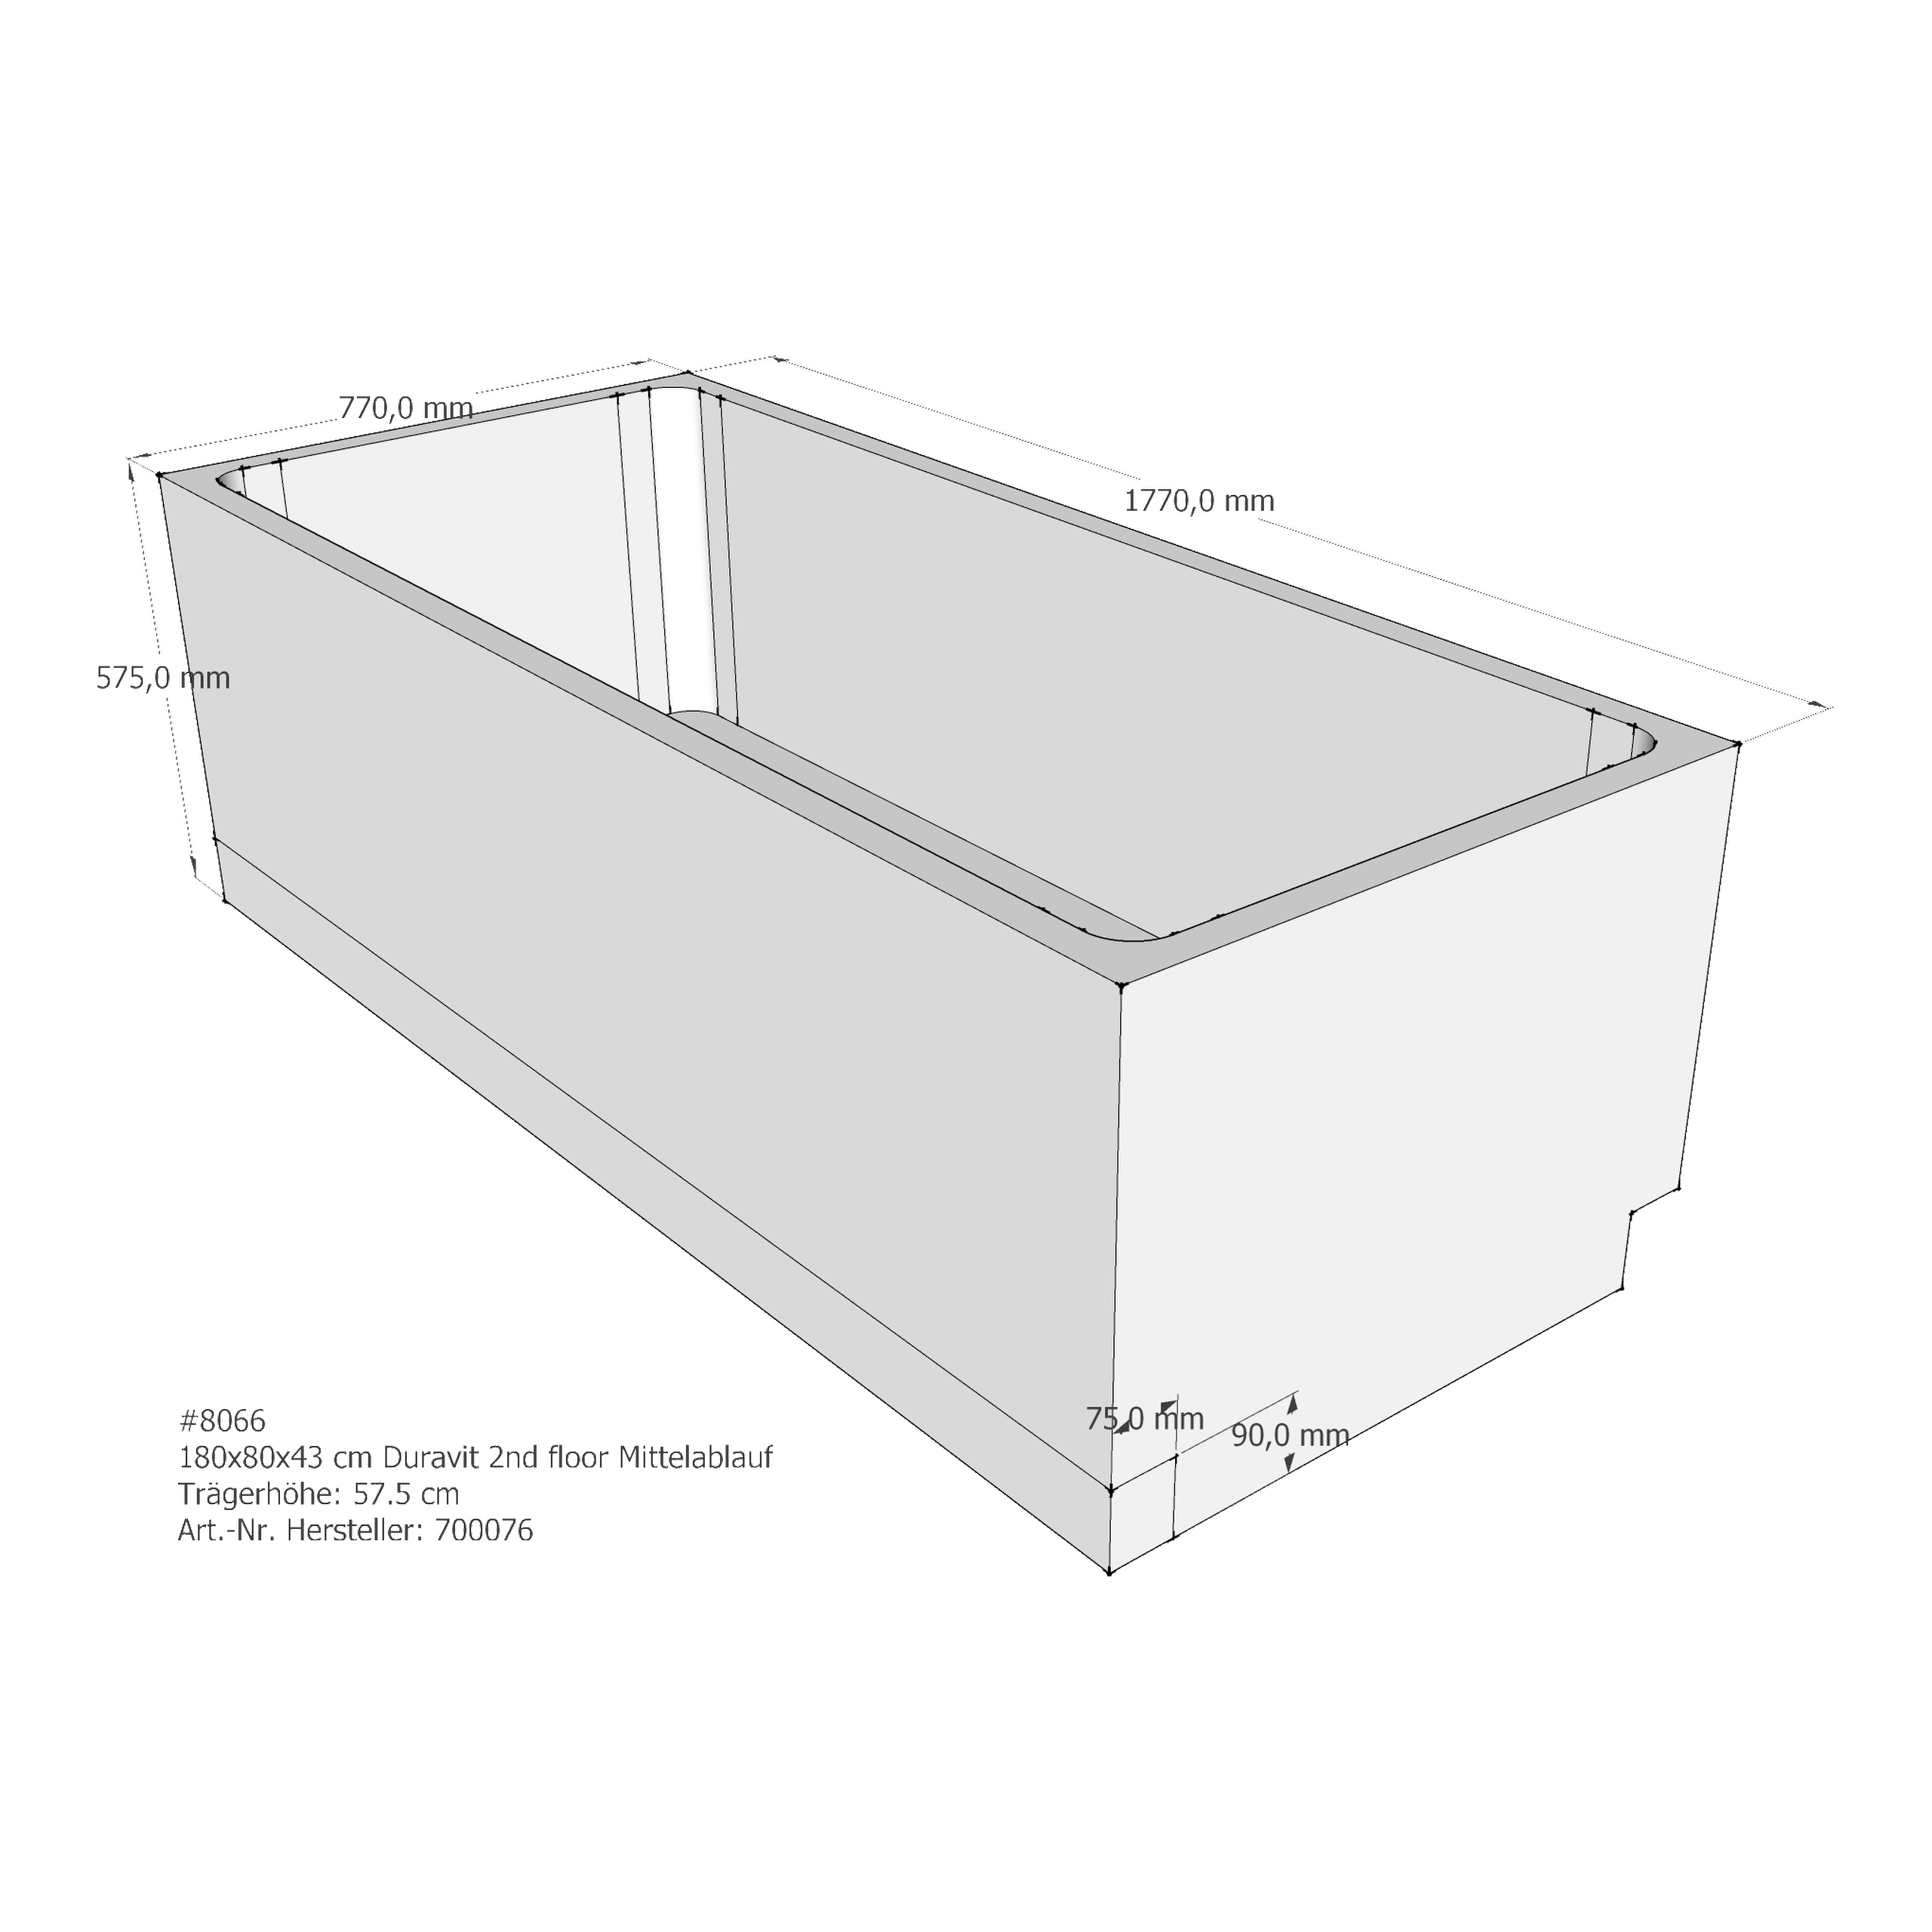 Badewannenträger für Duravit 2nd floor 180 × 80 × 43 cm